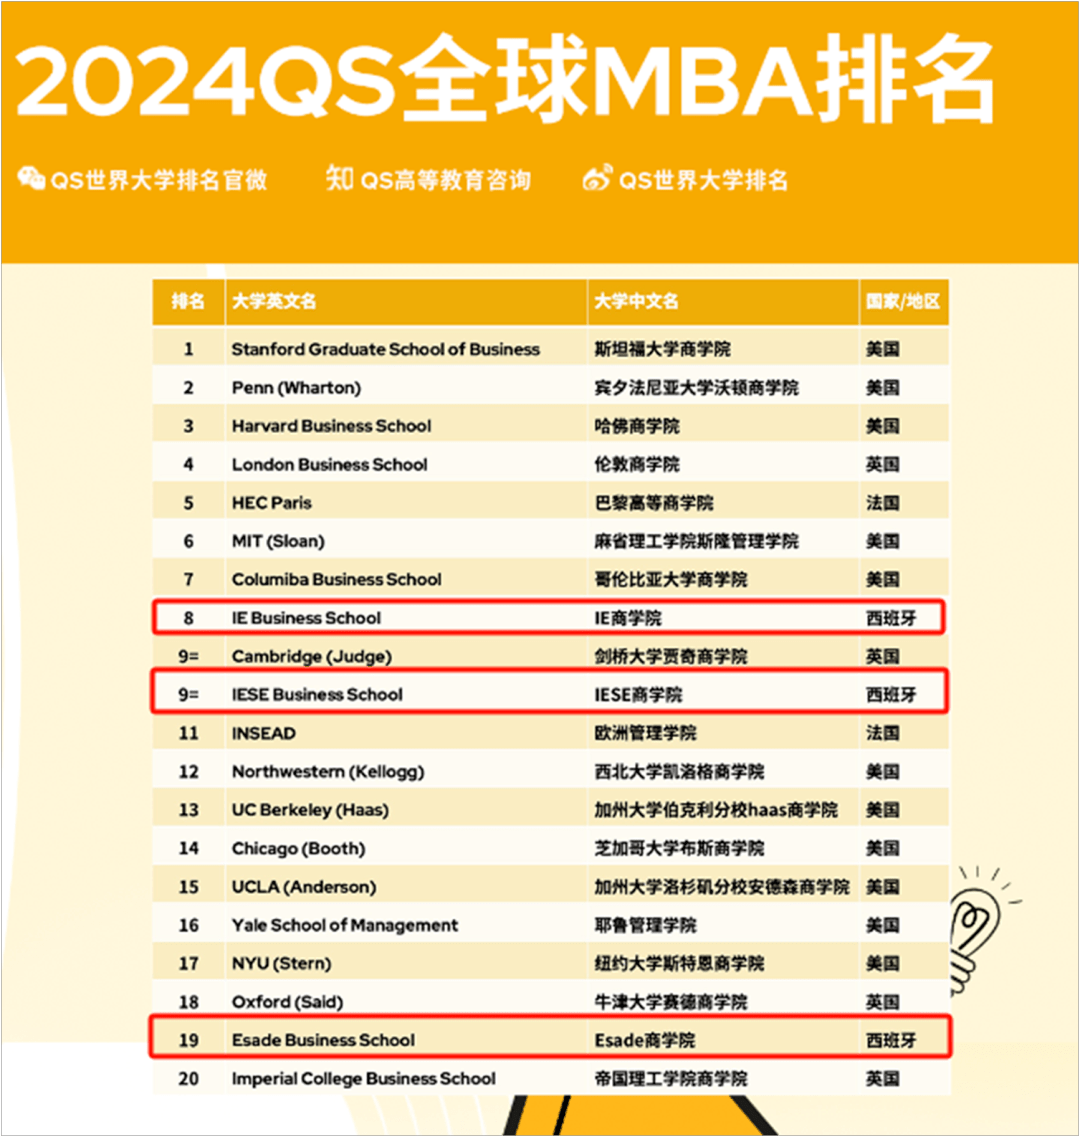 欧洲:2024QS全球MBA &amp; 商科硕士排名发布欧洲！西班牙三所商学院欧洲排名列于TOP10~